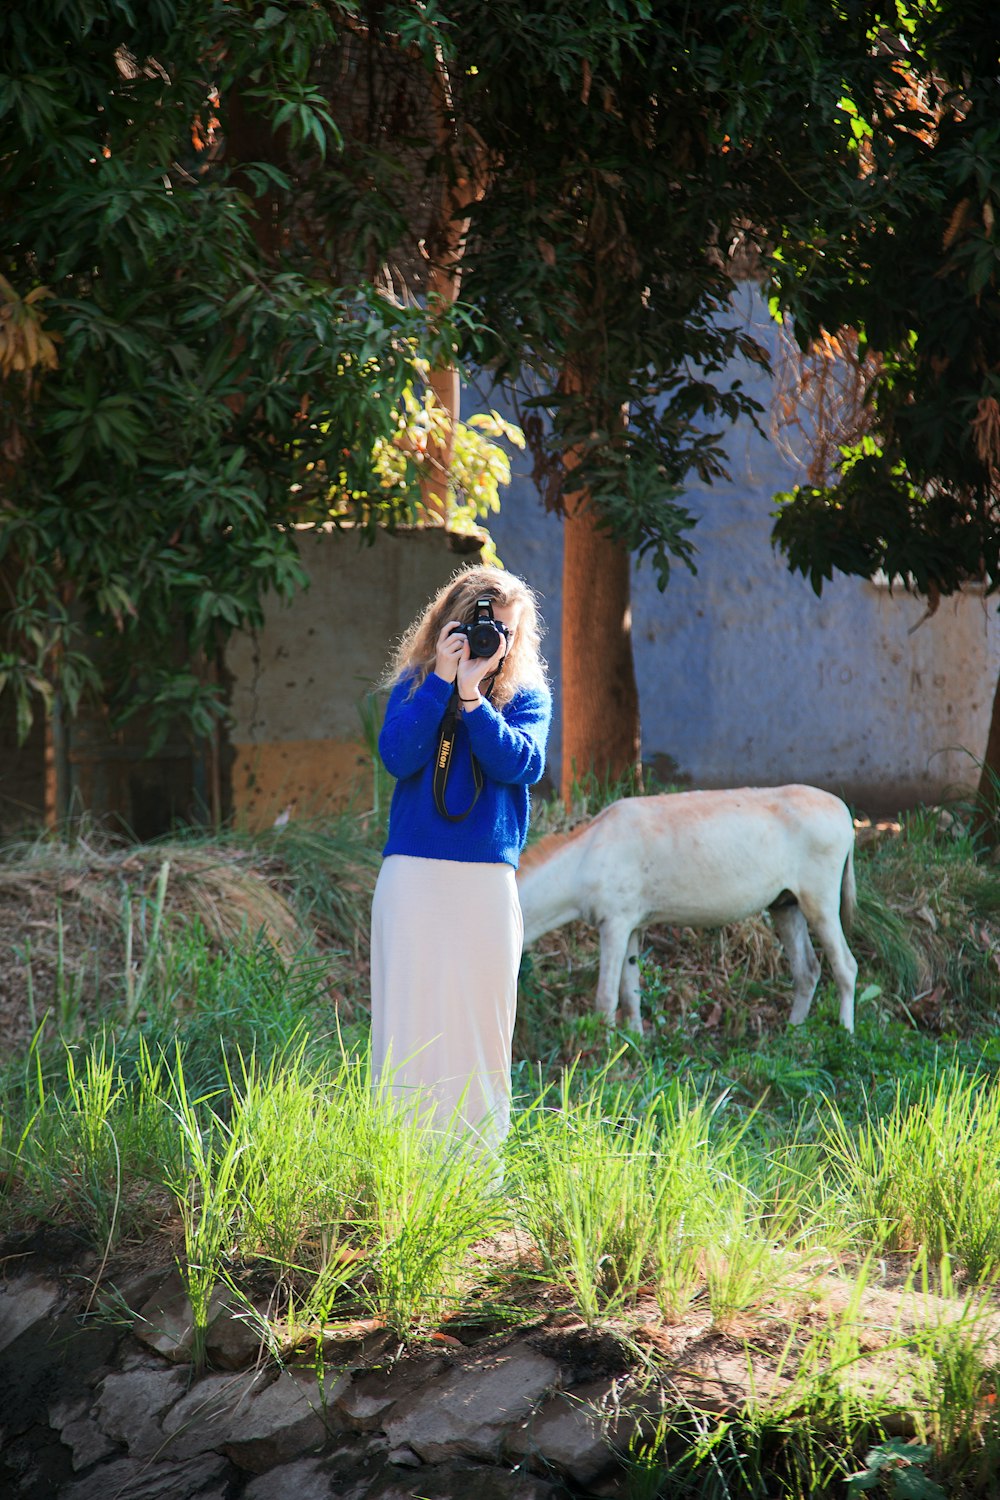 uma mulher está tirando uma foto de uma vaca